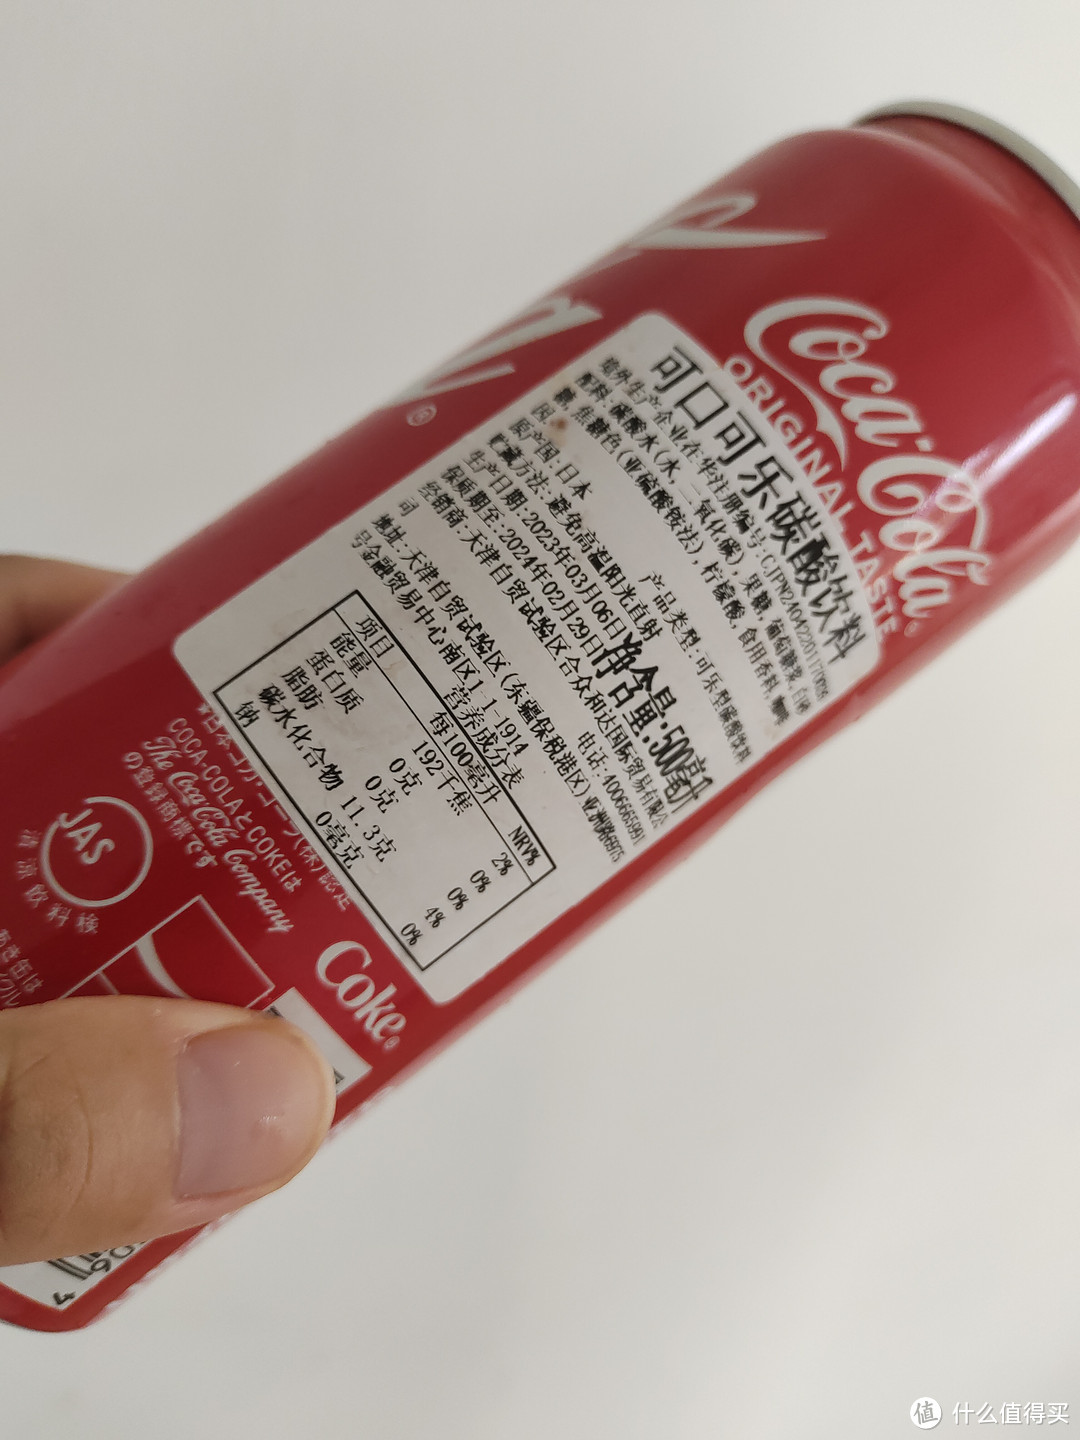 进口的可口可乐有什么不一样呢？